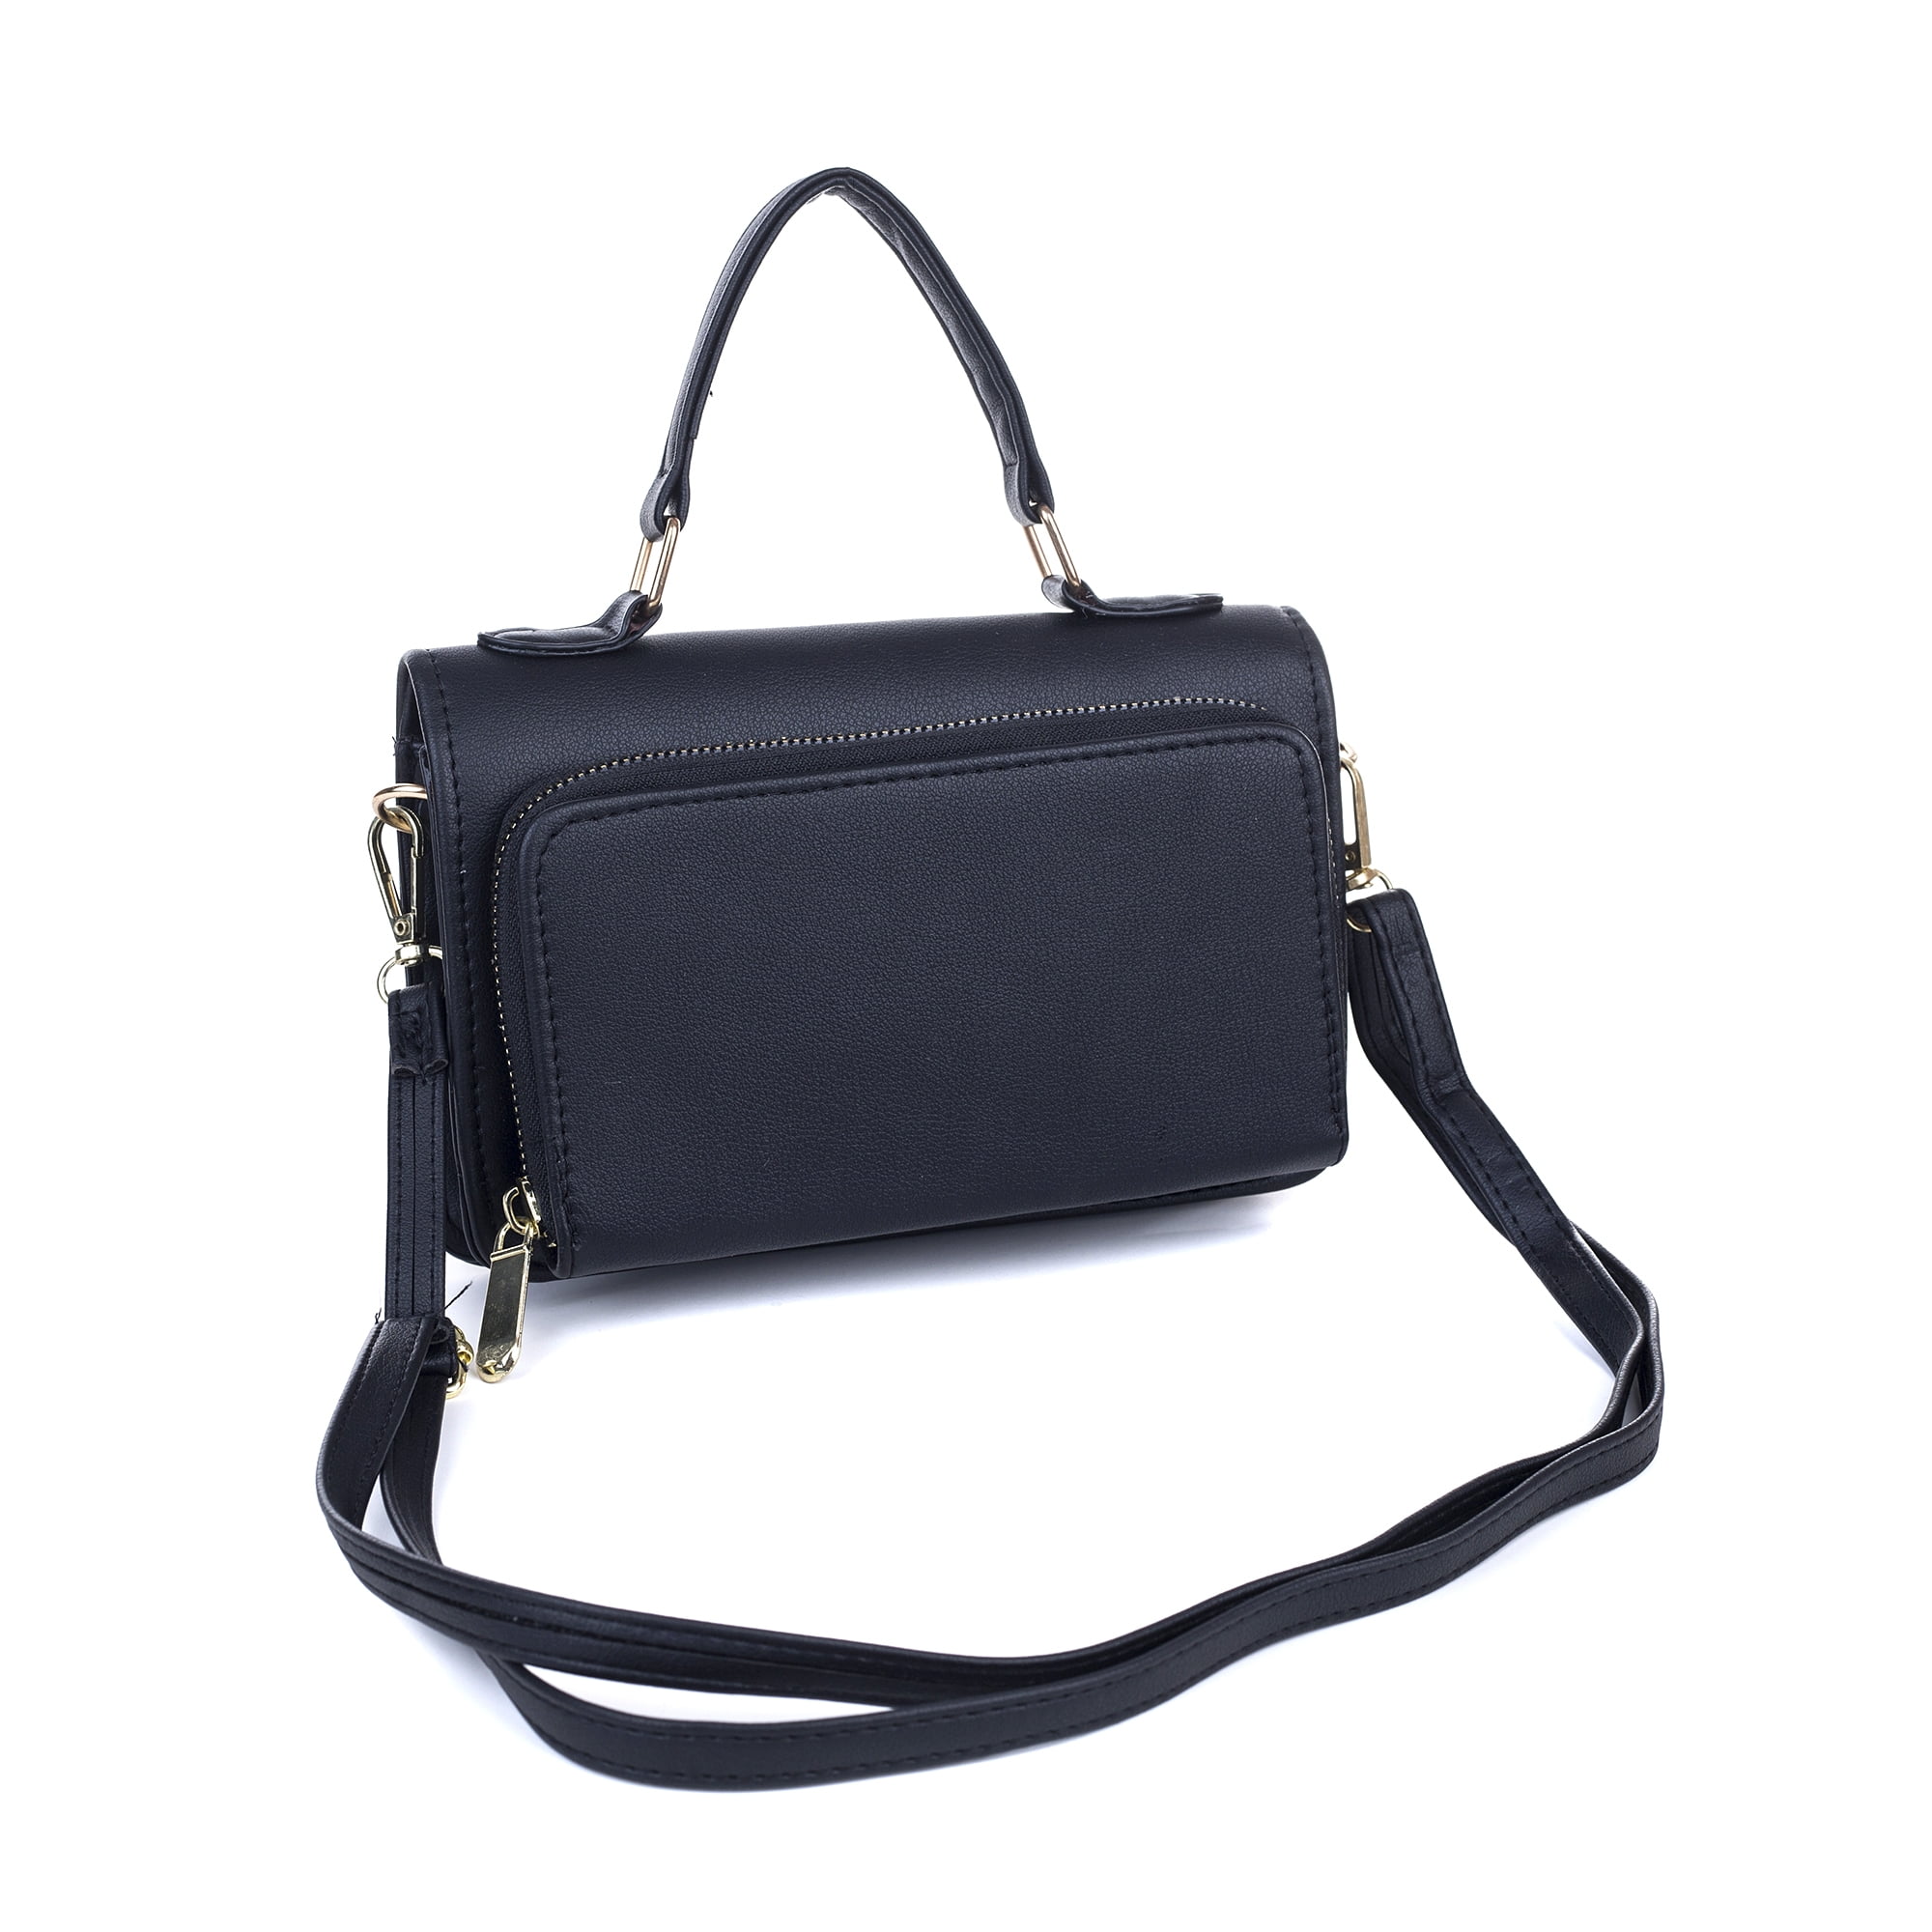 Designer Black Shoulder Bag with Side Wallet - The Specialty House